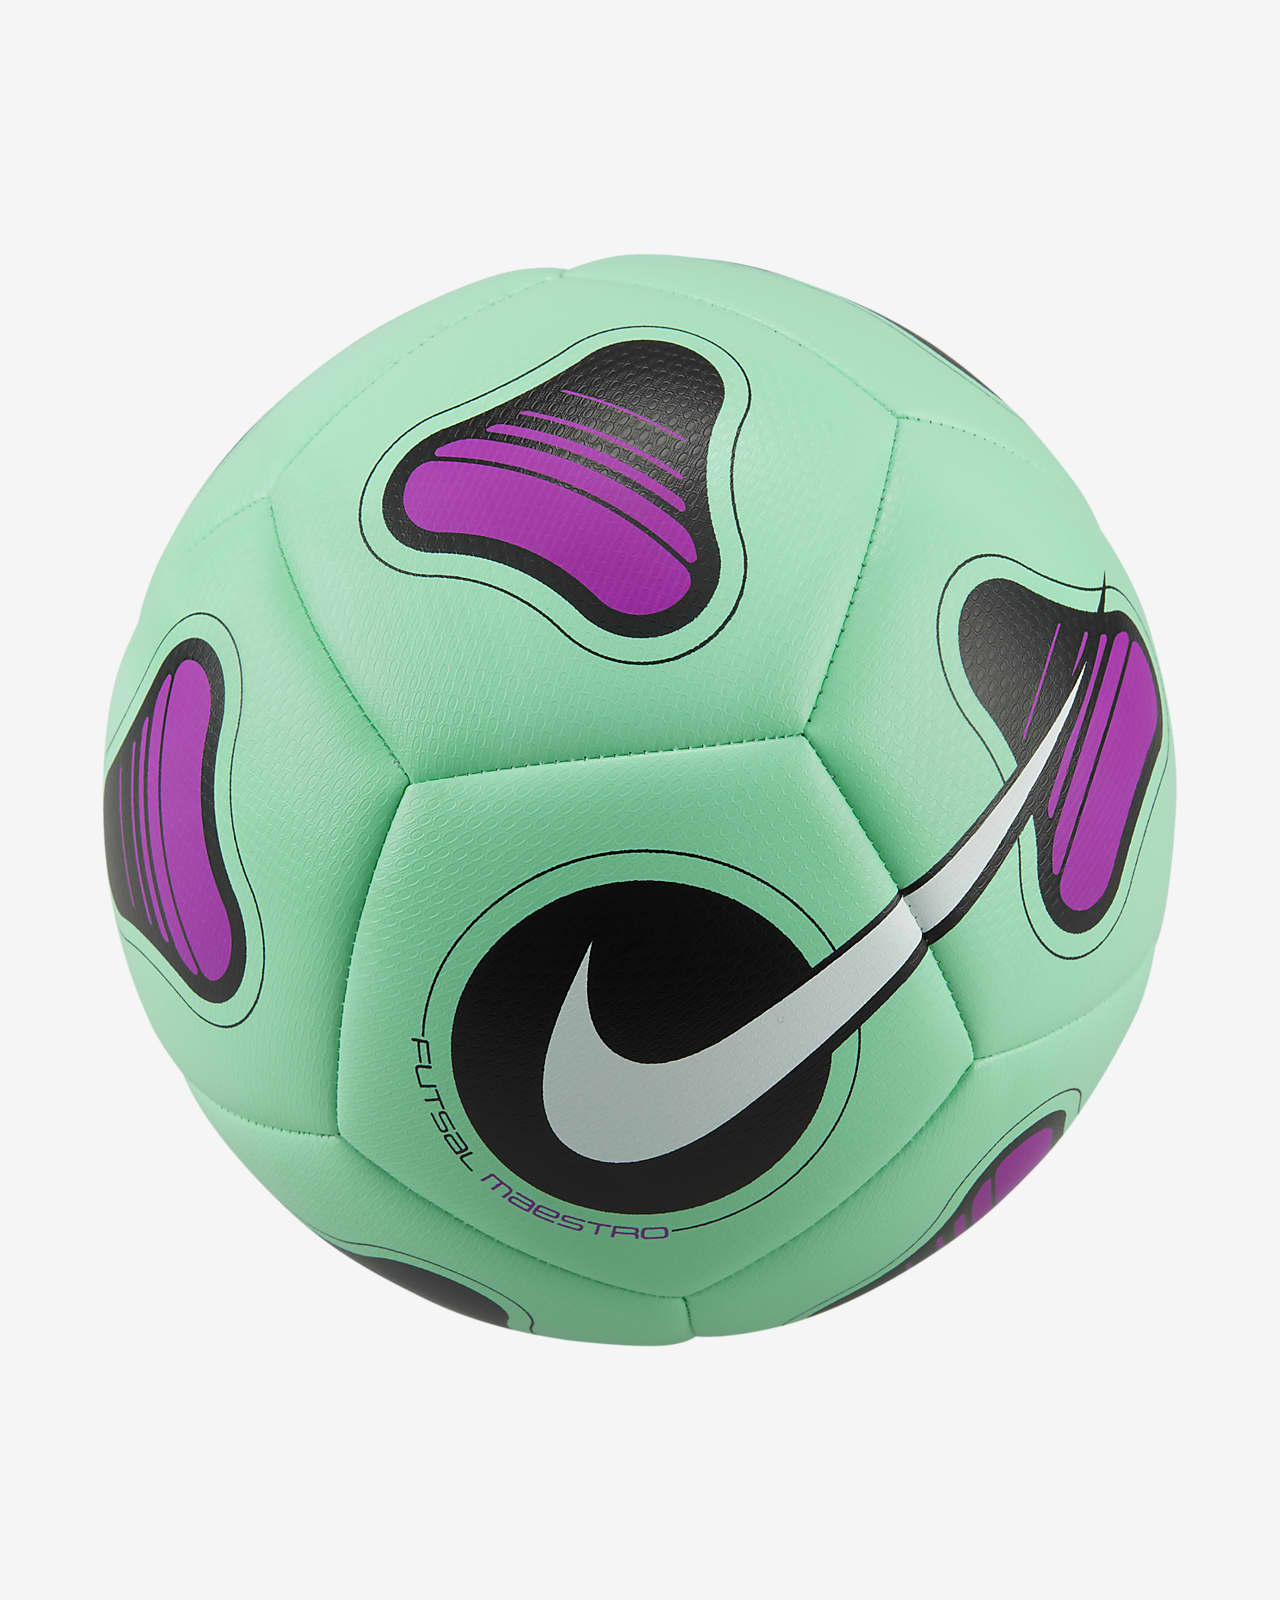 Ballon de futsal Nike Maestro